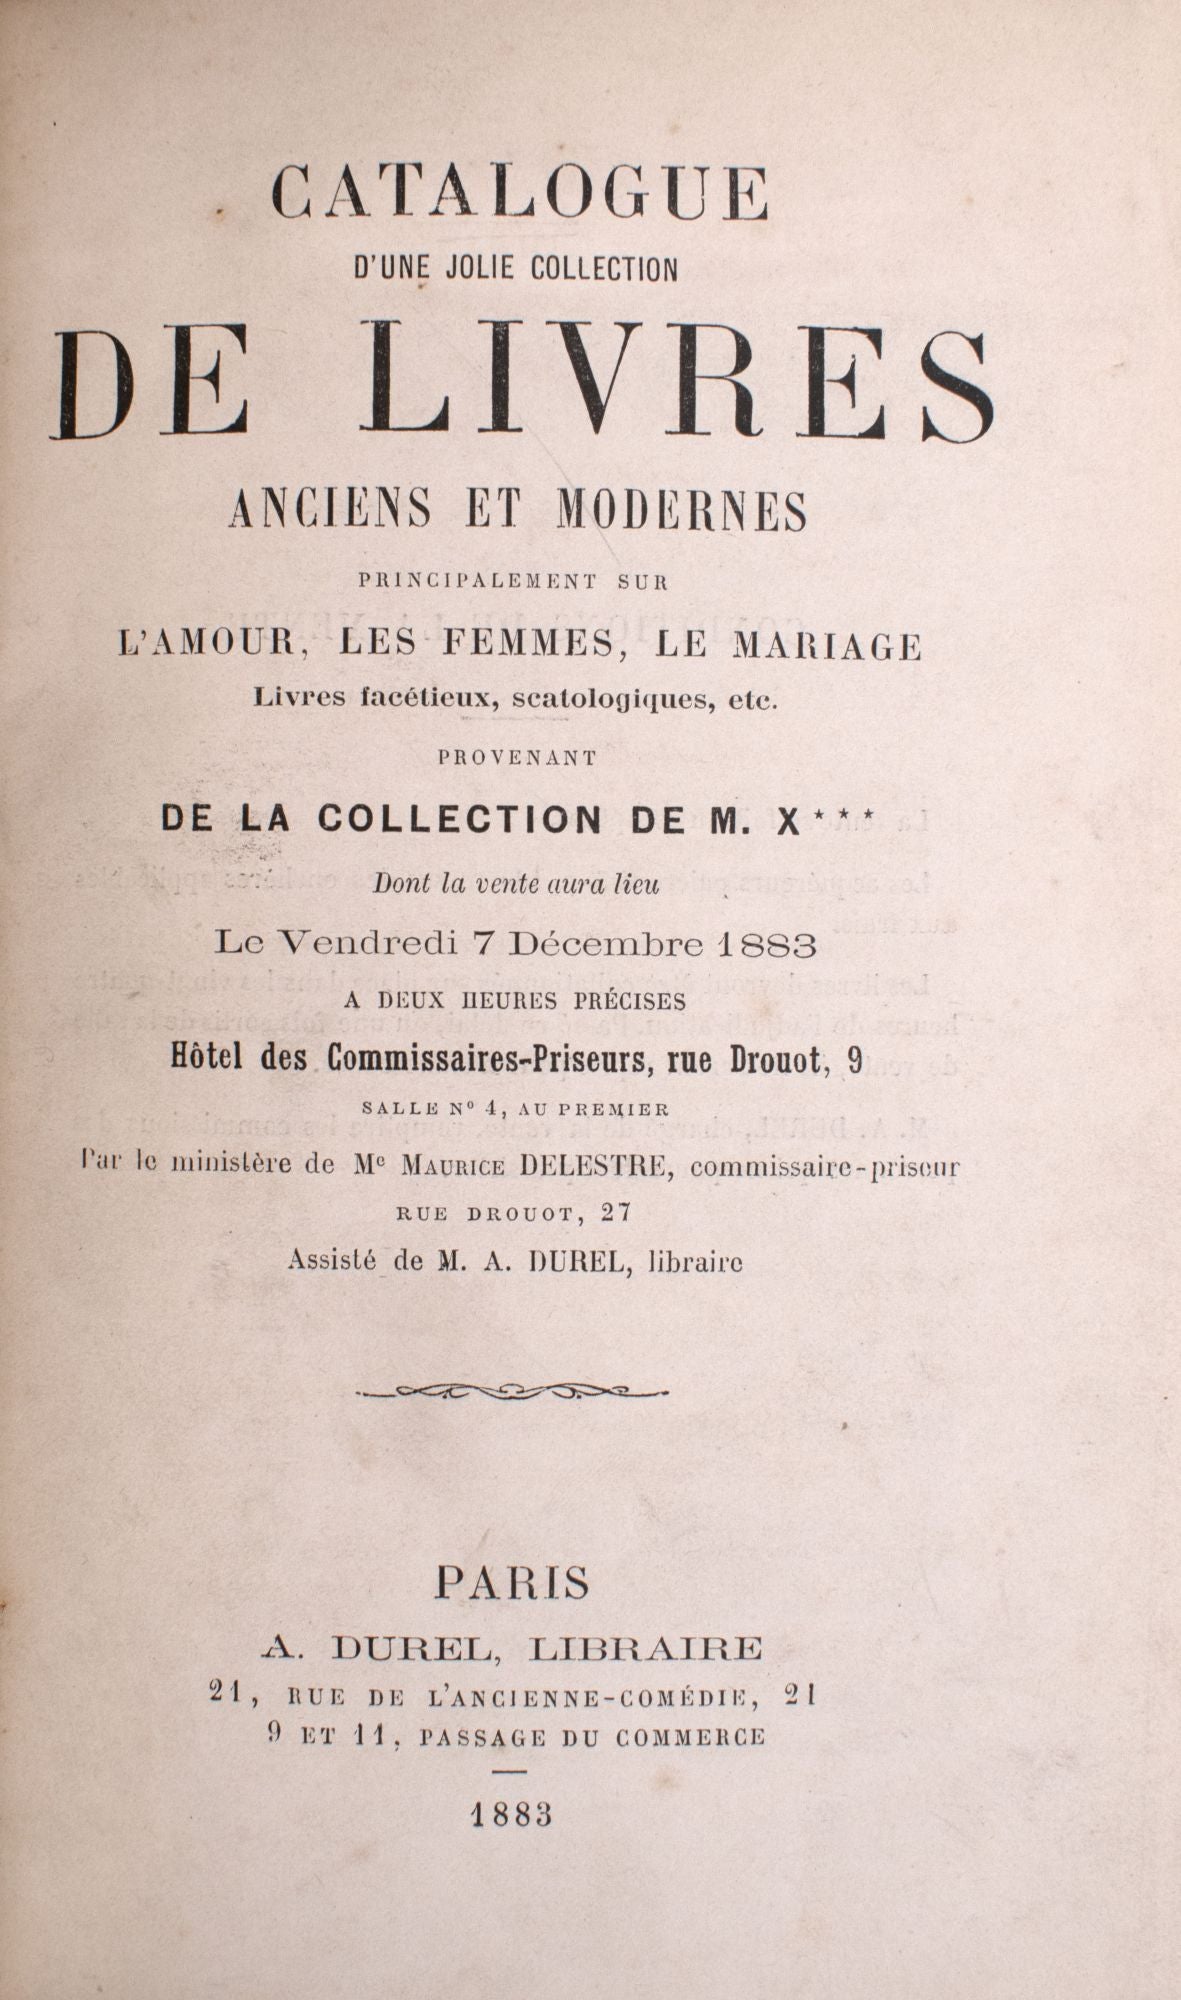 Catalogue d'une jolie collection de livres anciens et modernes,  principalement sur l'amour, les femmes, le mariage, livres facétieux,  scatalogiques  provenant de la collection de M. X***, dont la vente aura  lieu